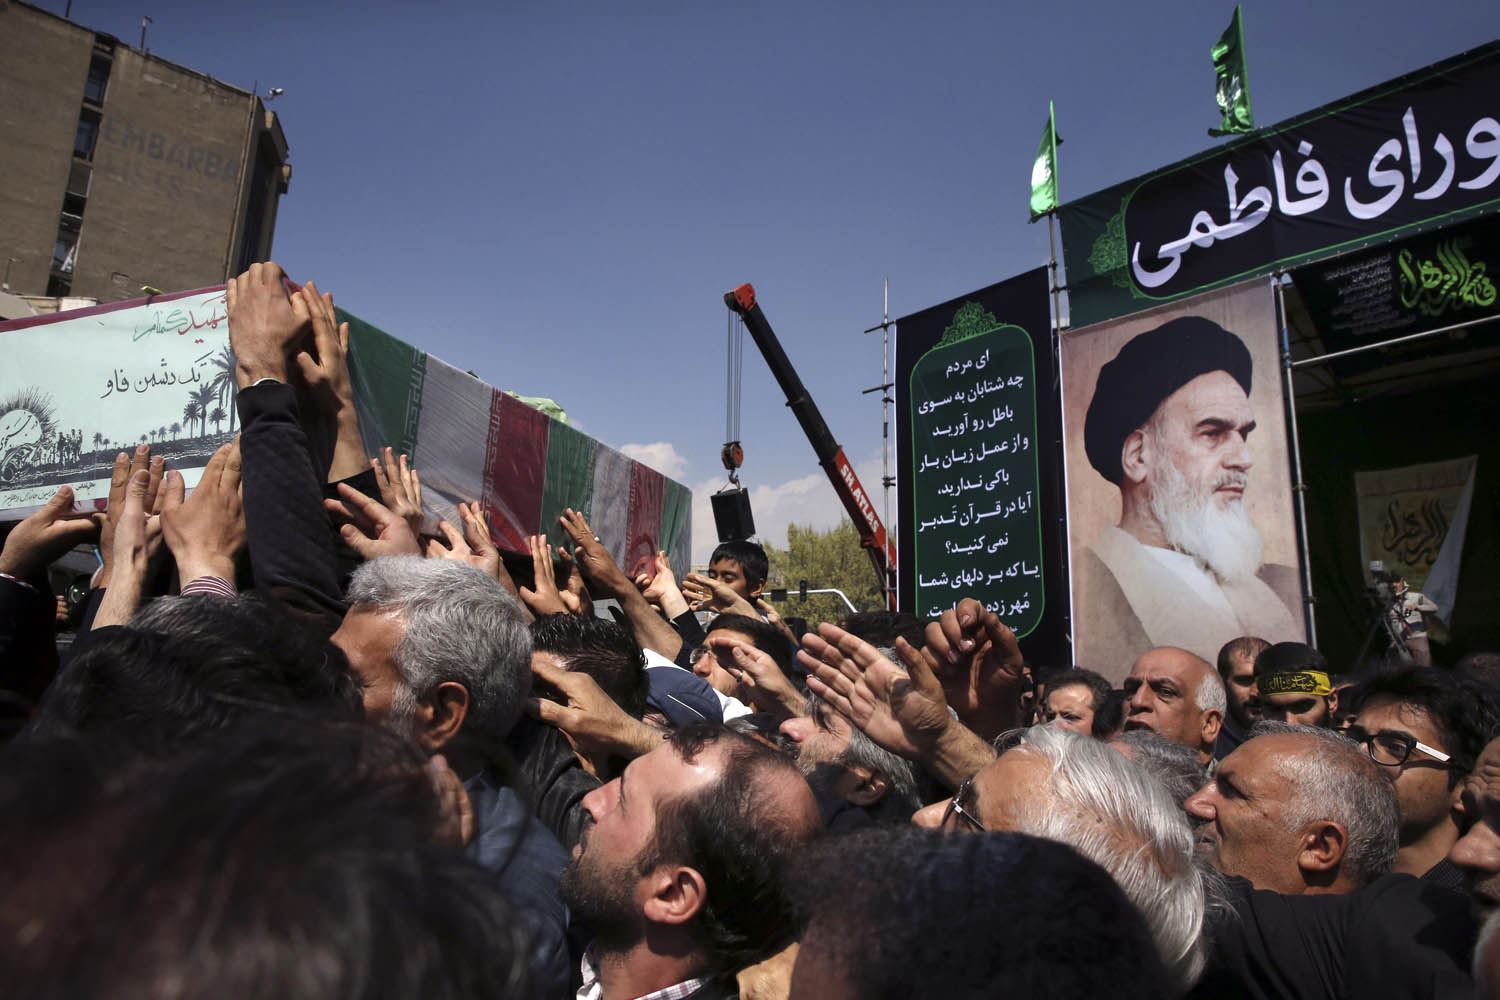 تشييع احد قتلى الحرب العراقية - الإيرانية من الإيرانيين